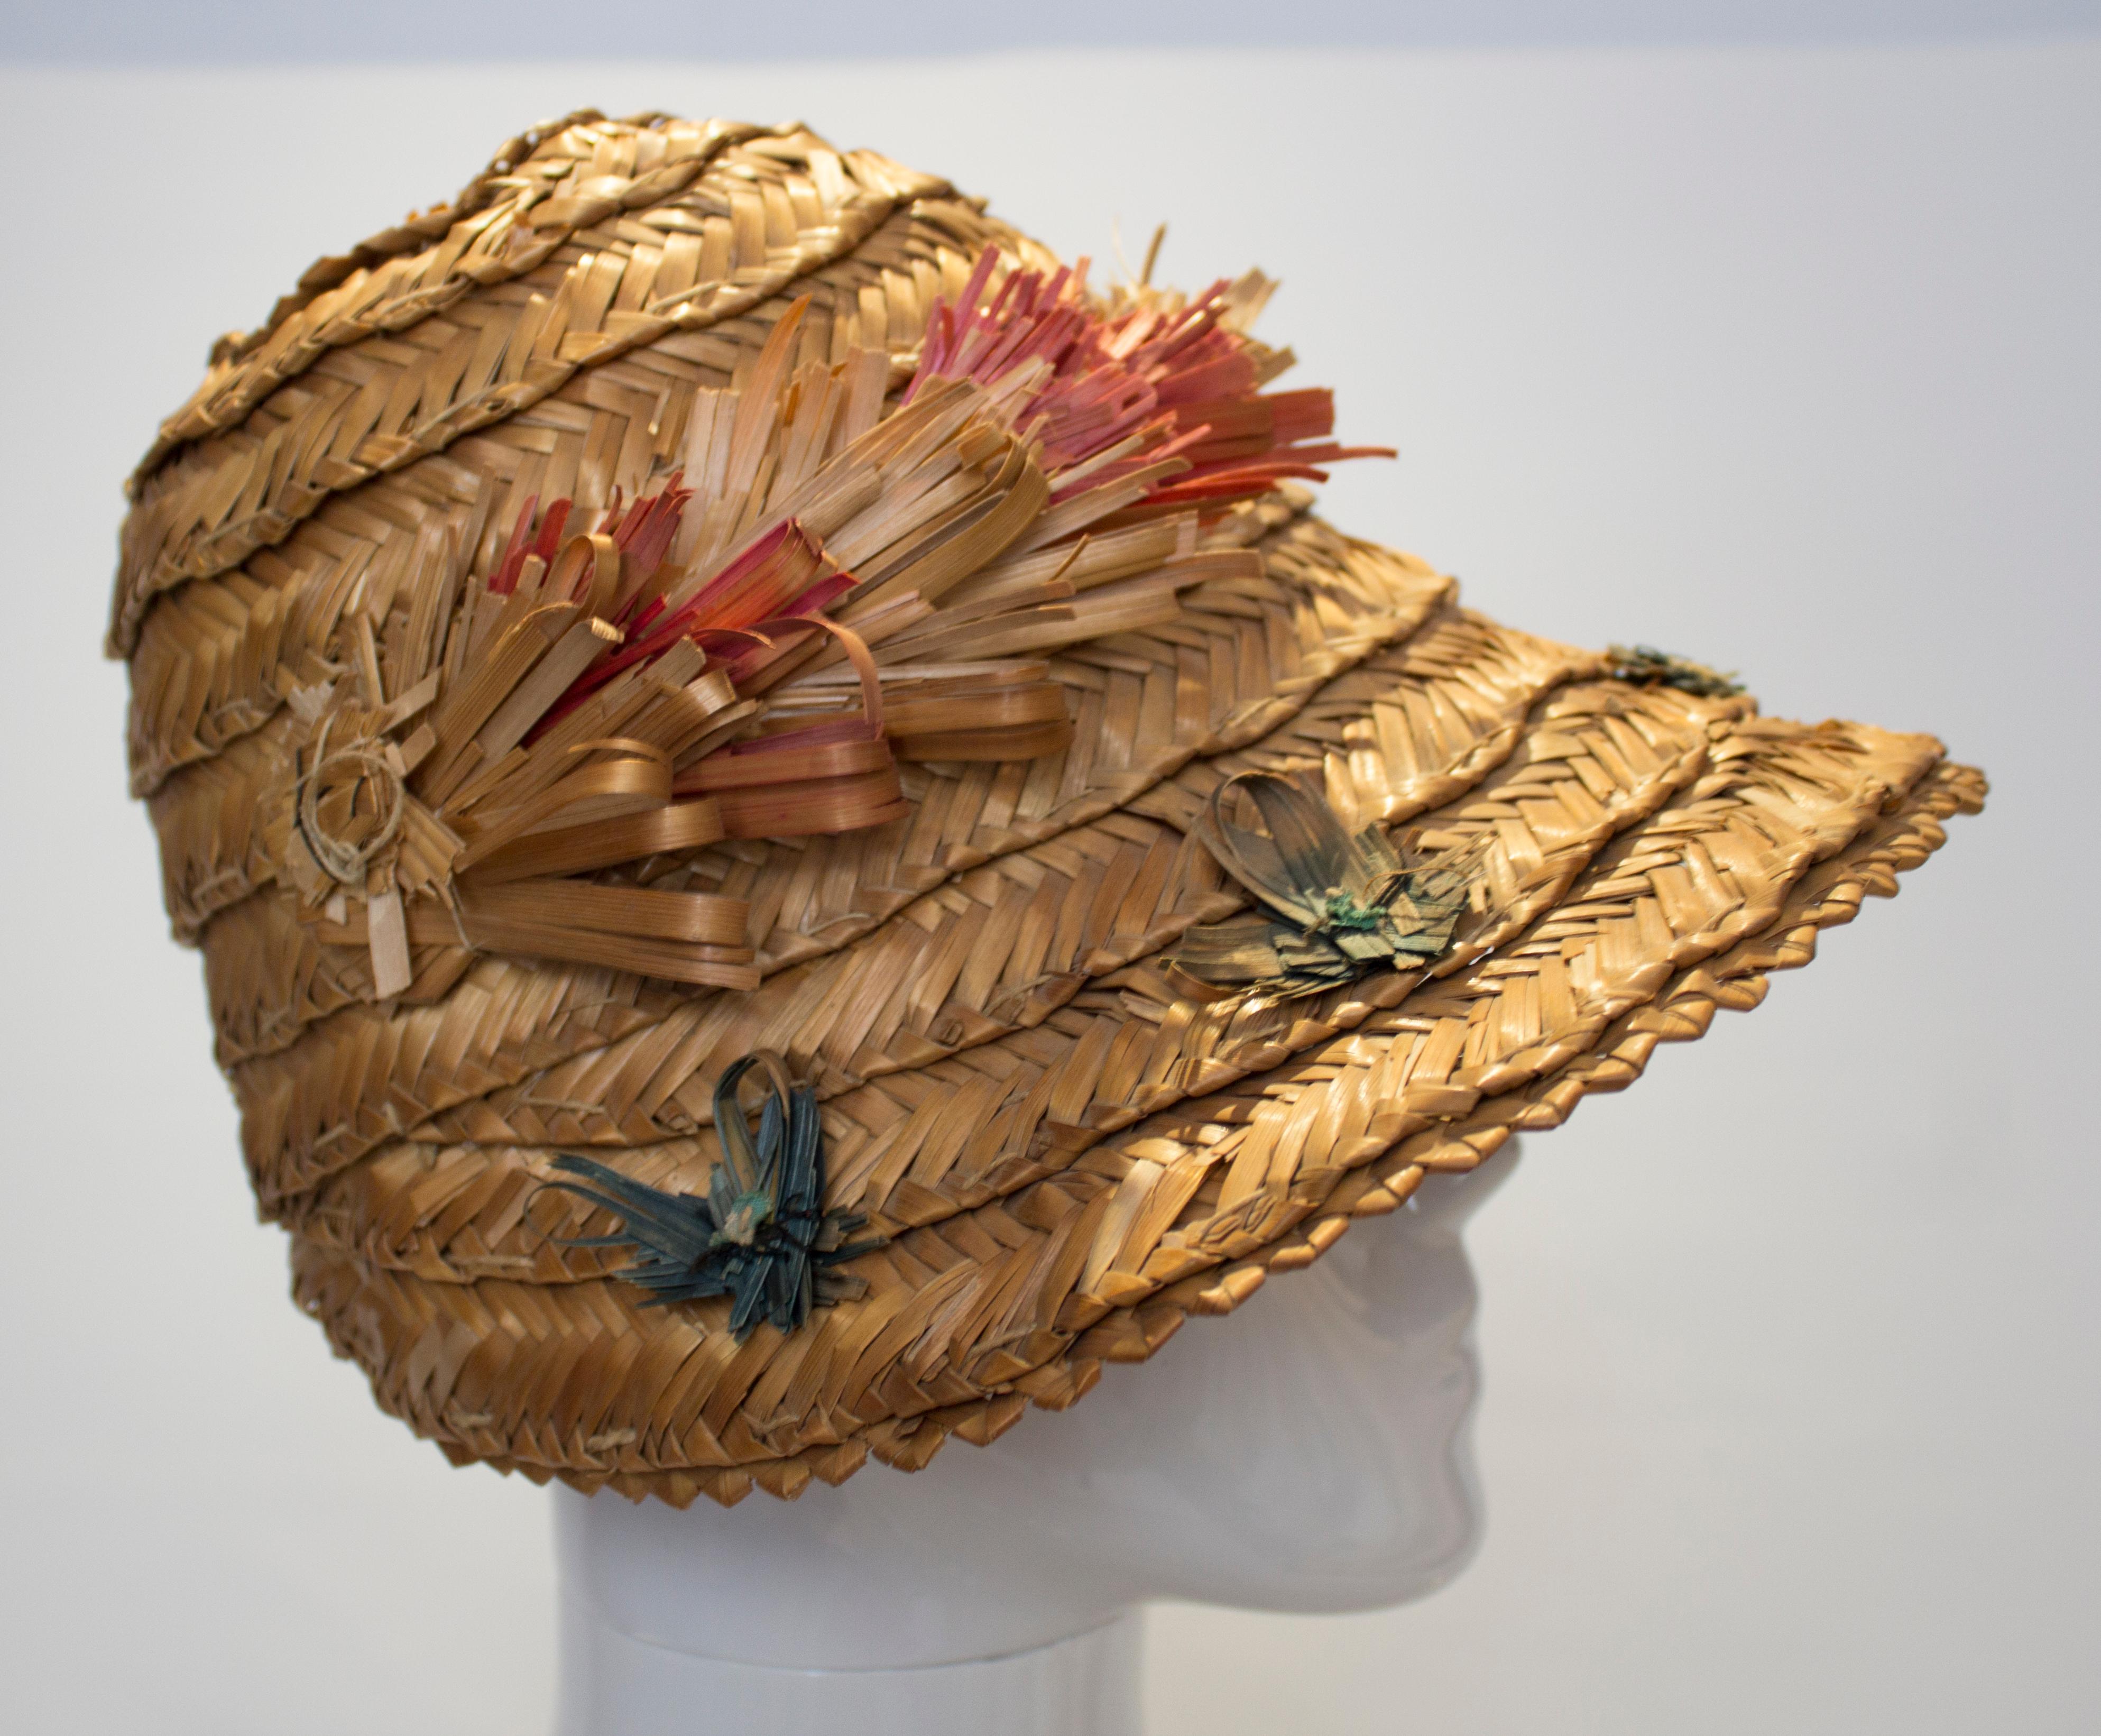  Ein lustiger Vintage-Hut für den Sommer. Der Hut hat eine wunderbare Form mit einem dezenten Schirm. Sie ist naturfarben und hat ein Band aus gefranstem Stroh als Verzierung. Maße: Innenumfang 22'', Höhe 6 1/2''.